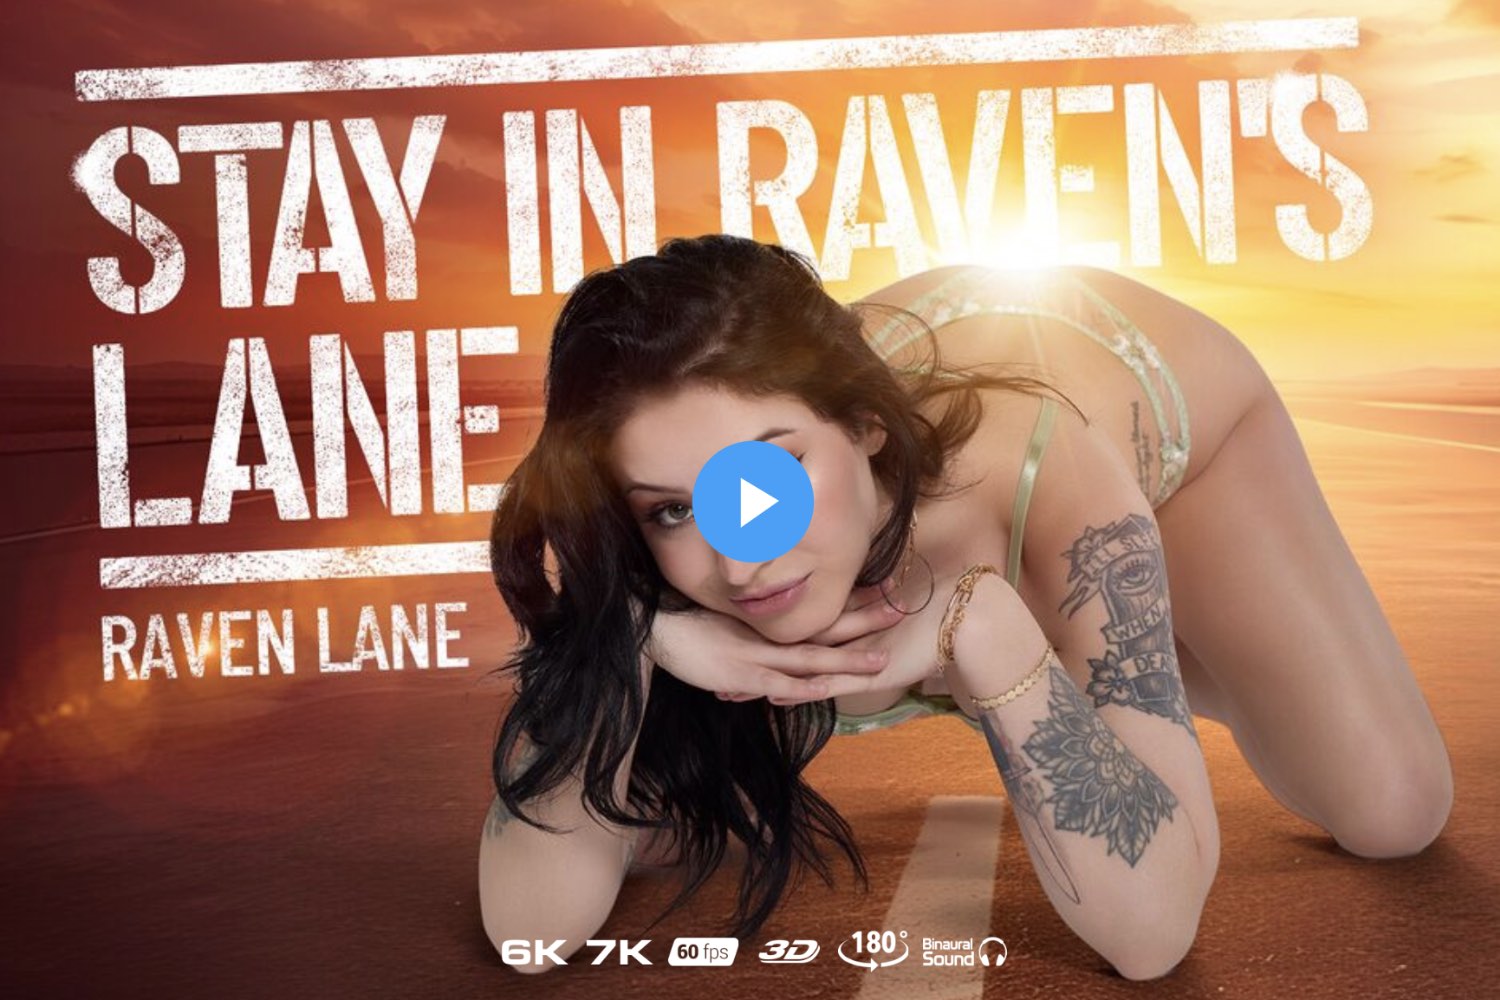 Stay In Raven's Lane - Raven Lane Virtual Reality Porn - Raven Lane VR Porn